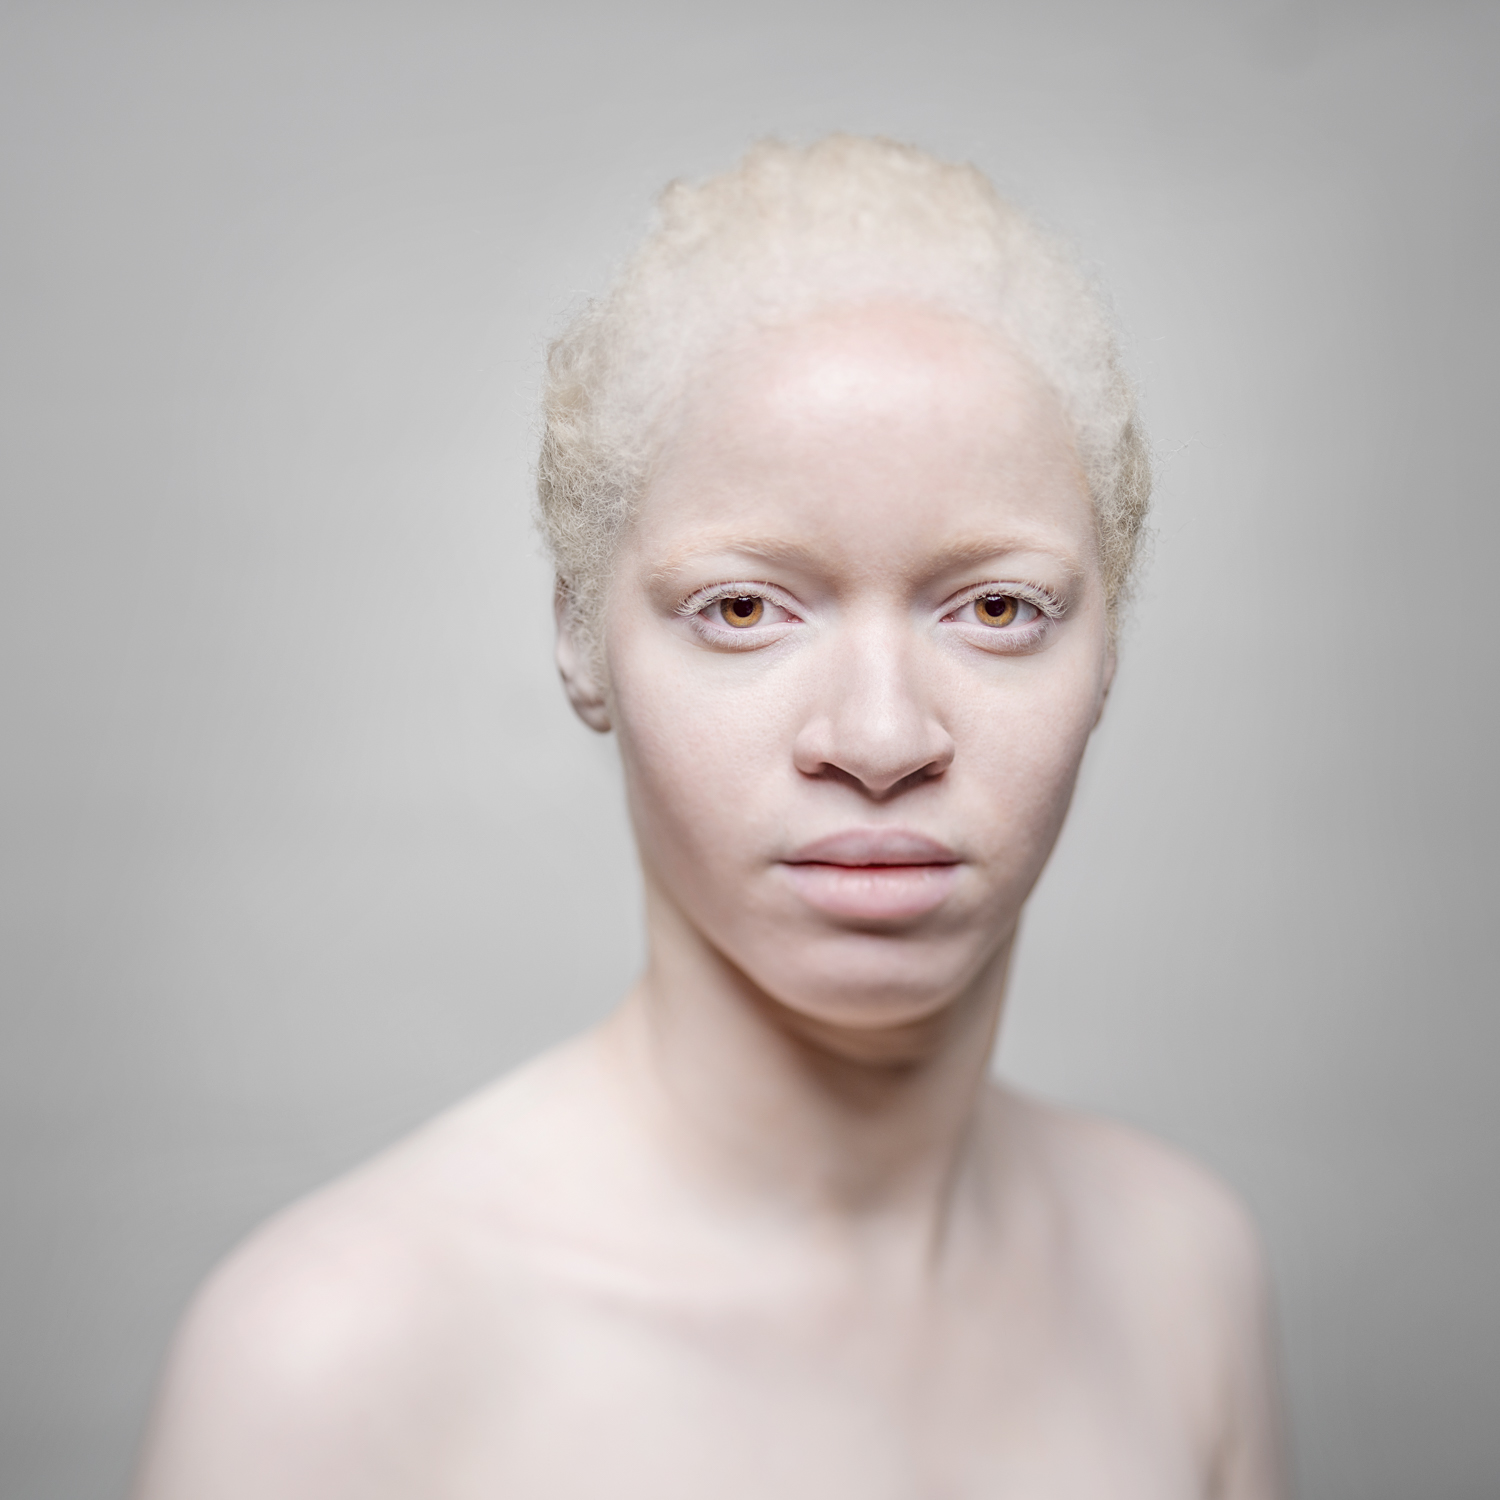 Как сделать волосы альбиноса